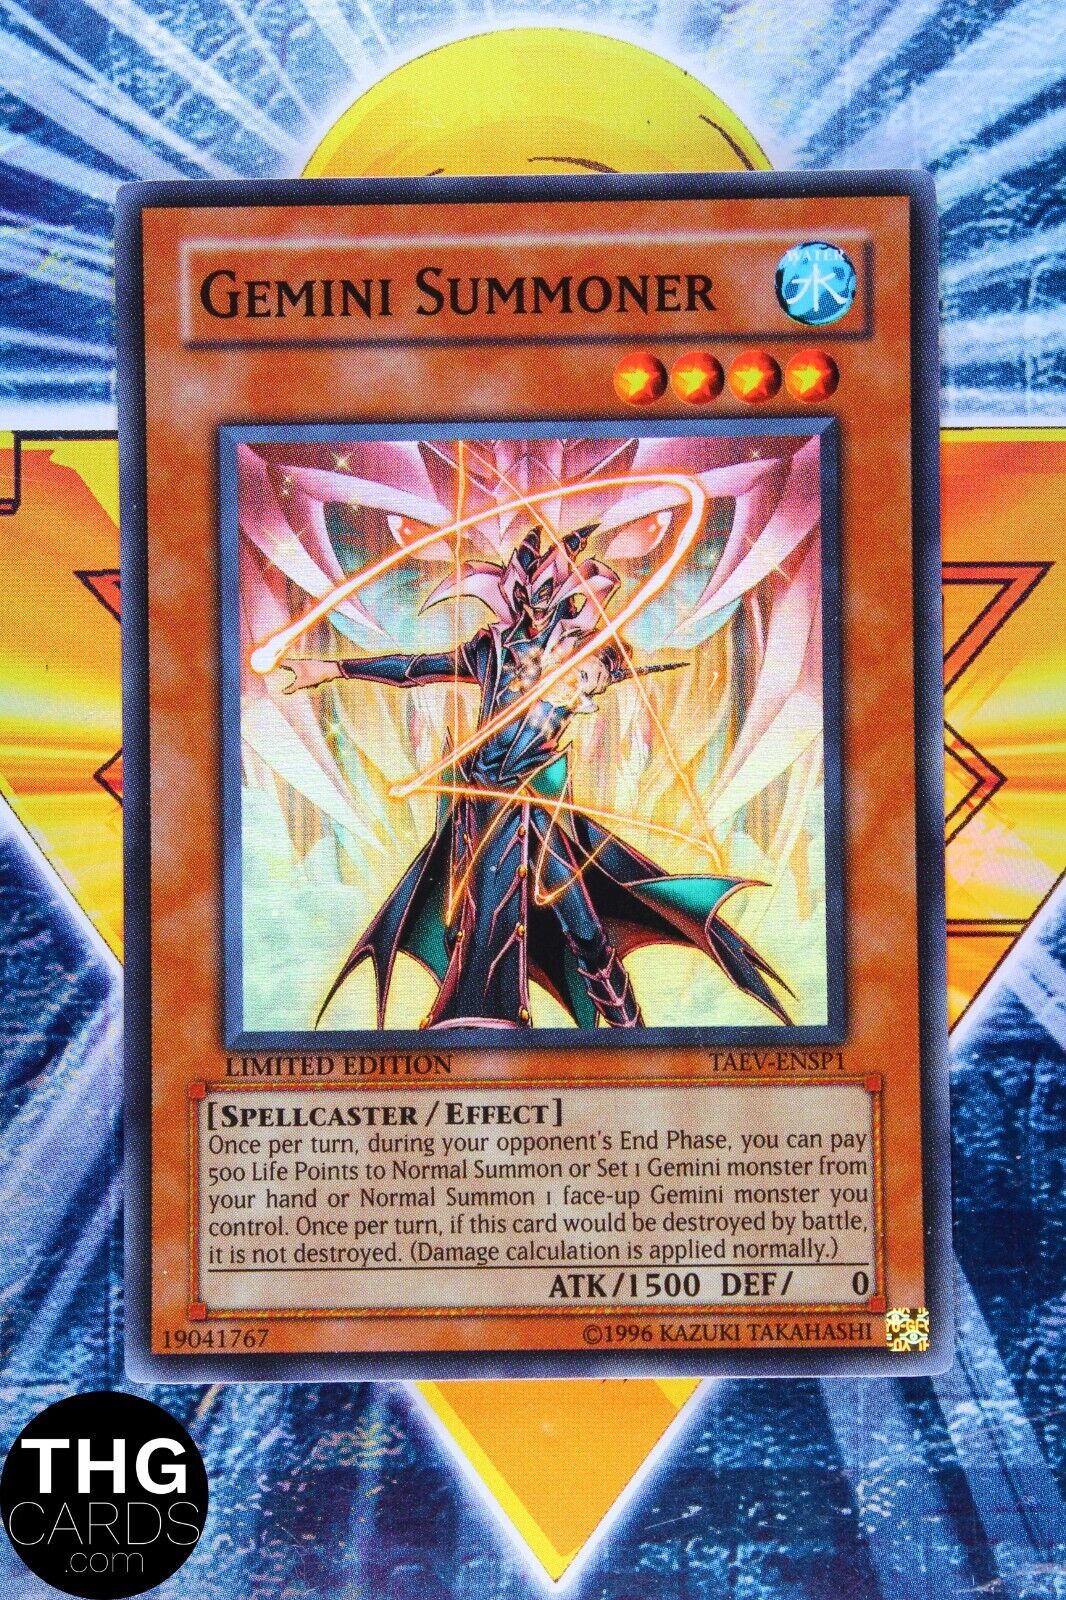 Gemini Summoner TAEV-ENSP1 Limited Edition Super Rare Yugioh Card